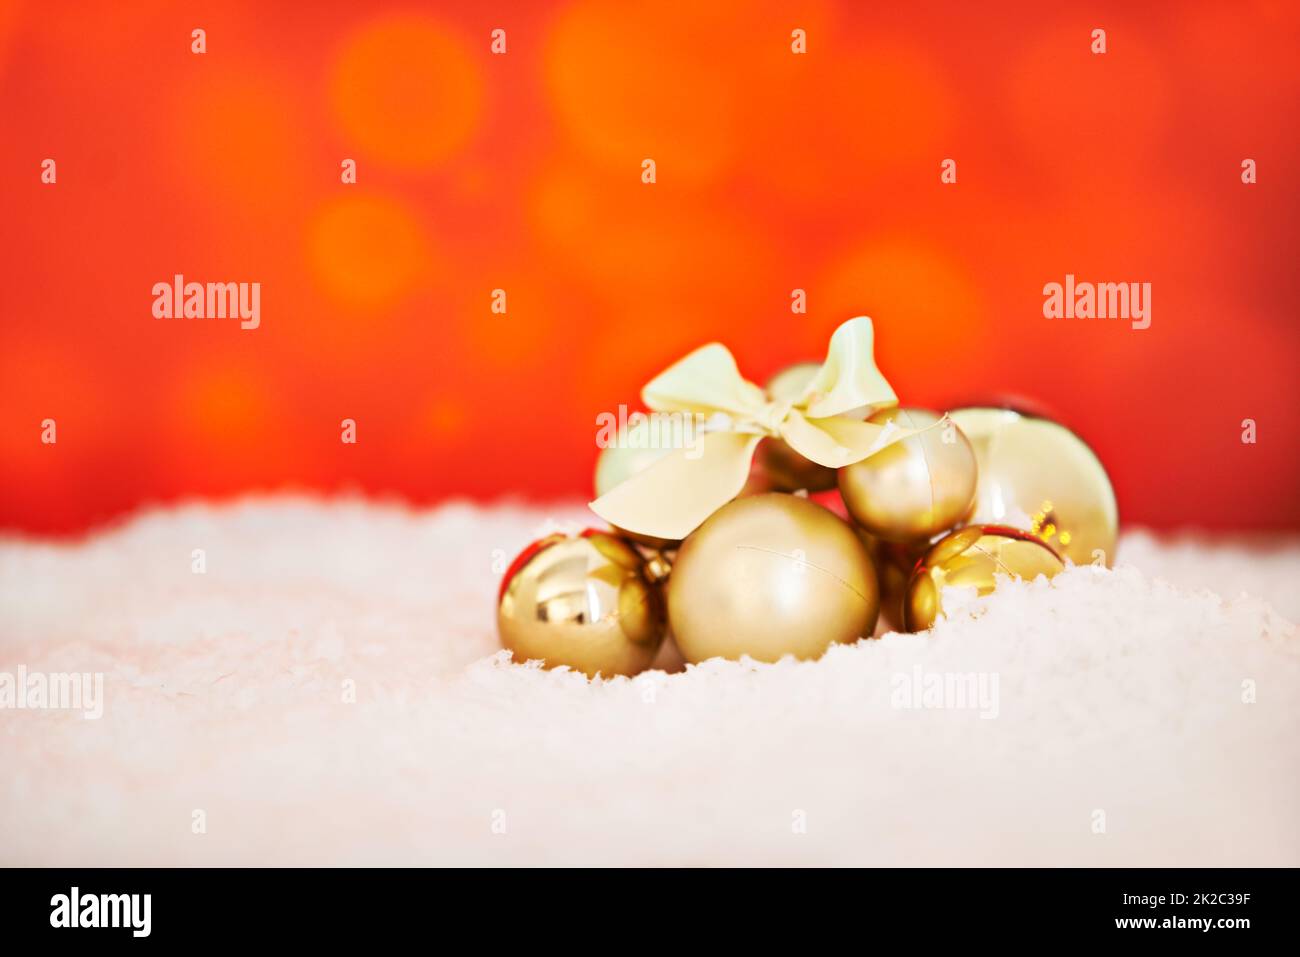 Fêtons vos fêtes. Studio photo d'un arrangement de décorations de Noël dorées sur fond rouge. Banque D'Images